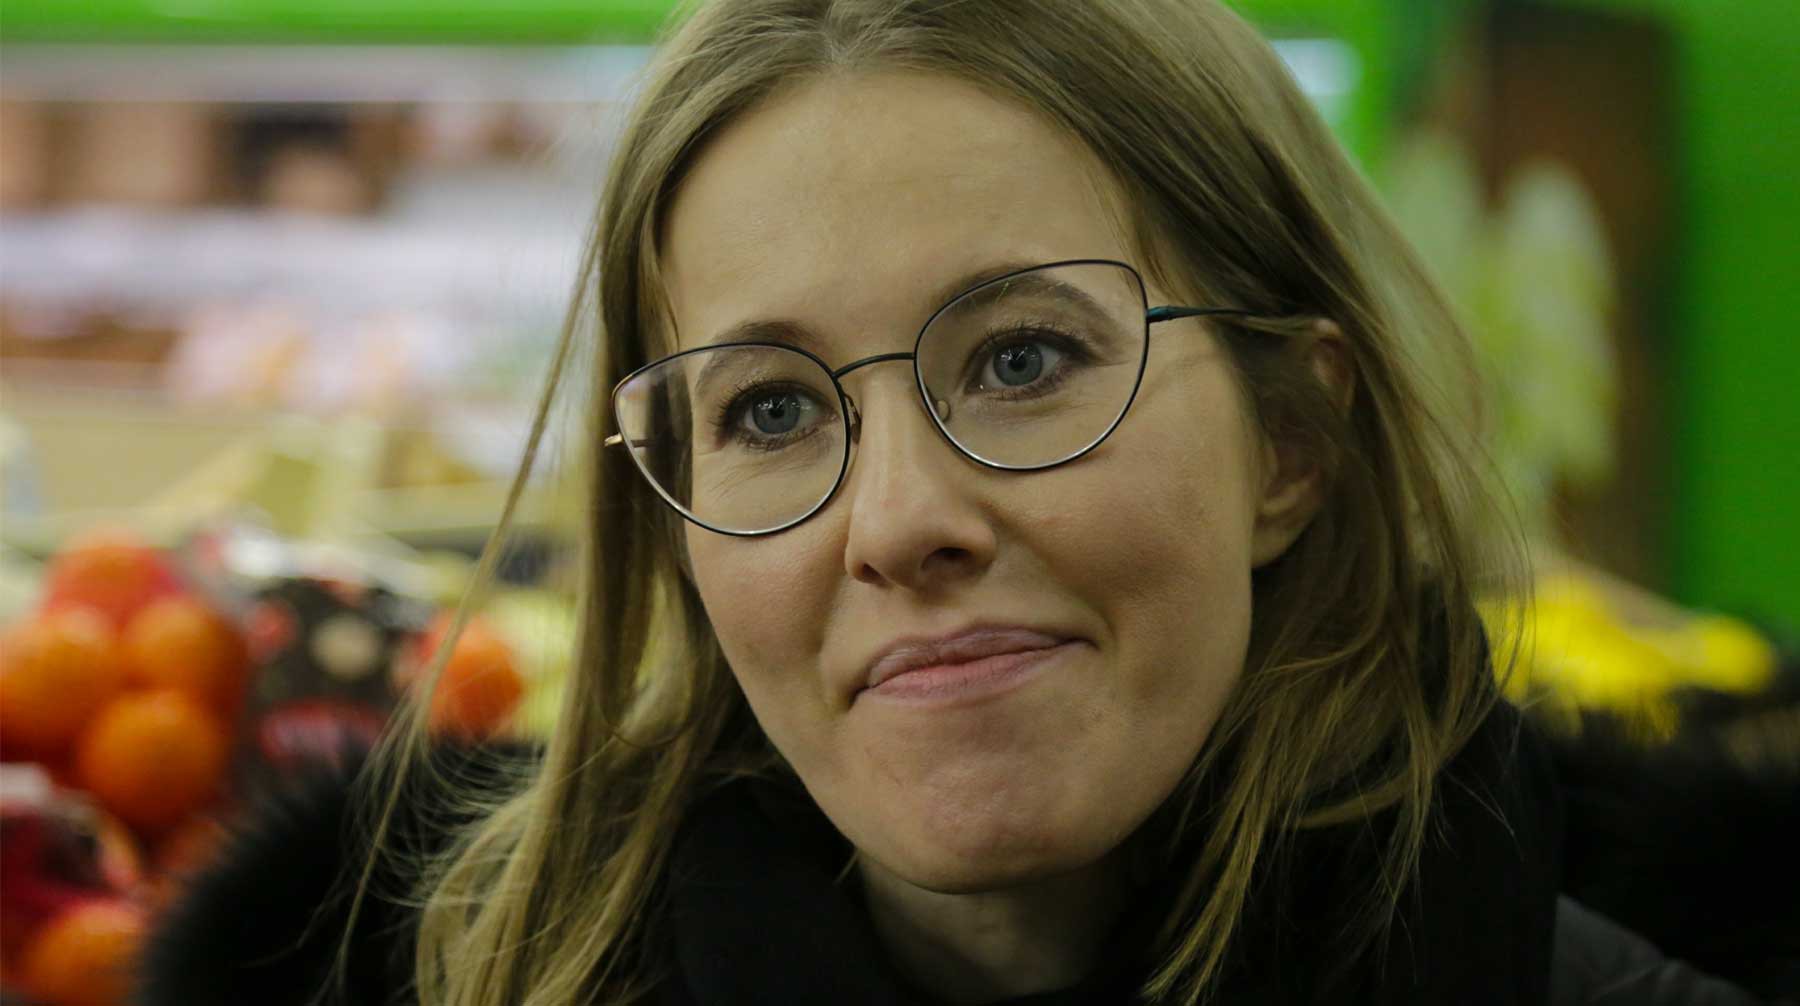 Dailystorm - Ксения Собчак стала генеральным продюсером газпромовского канала «Супер»